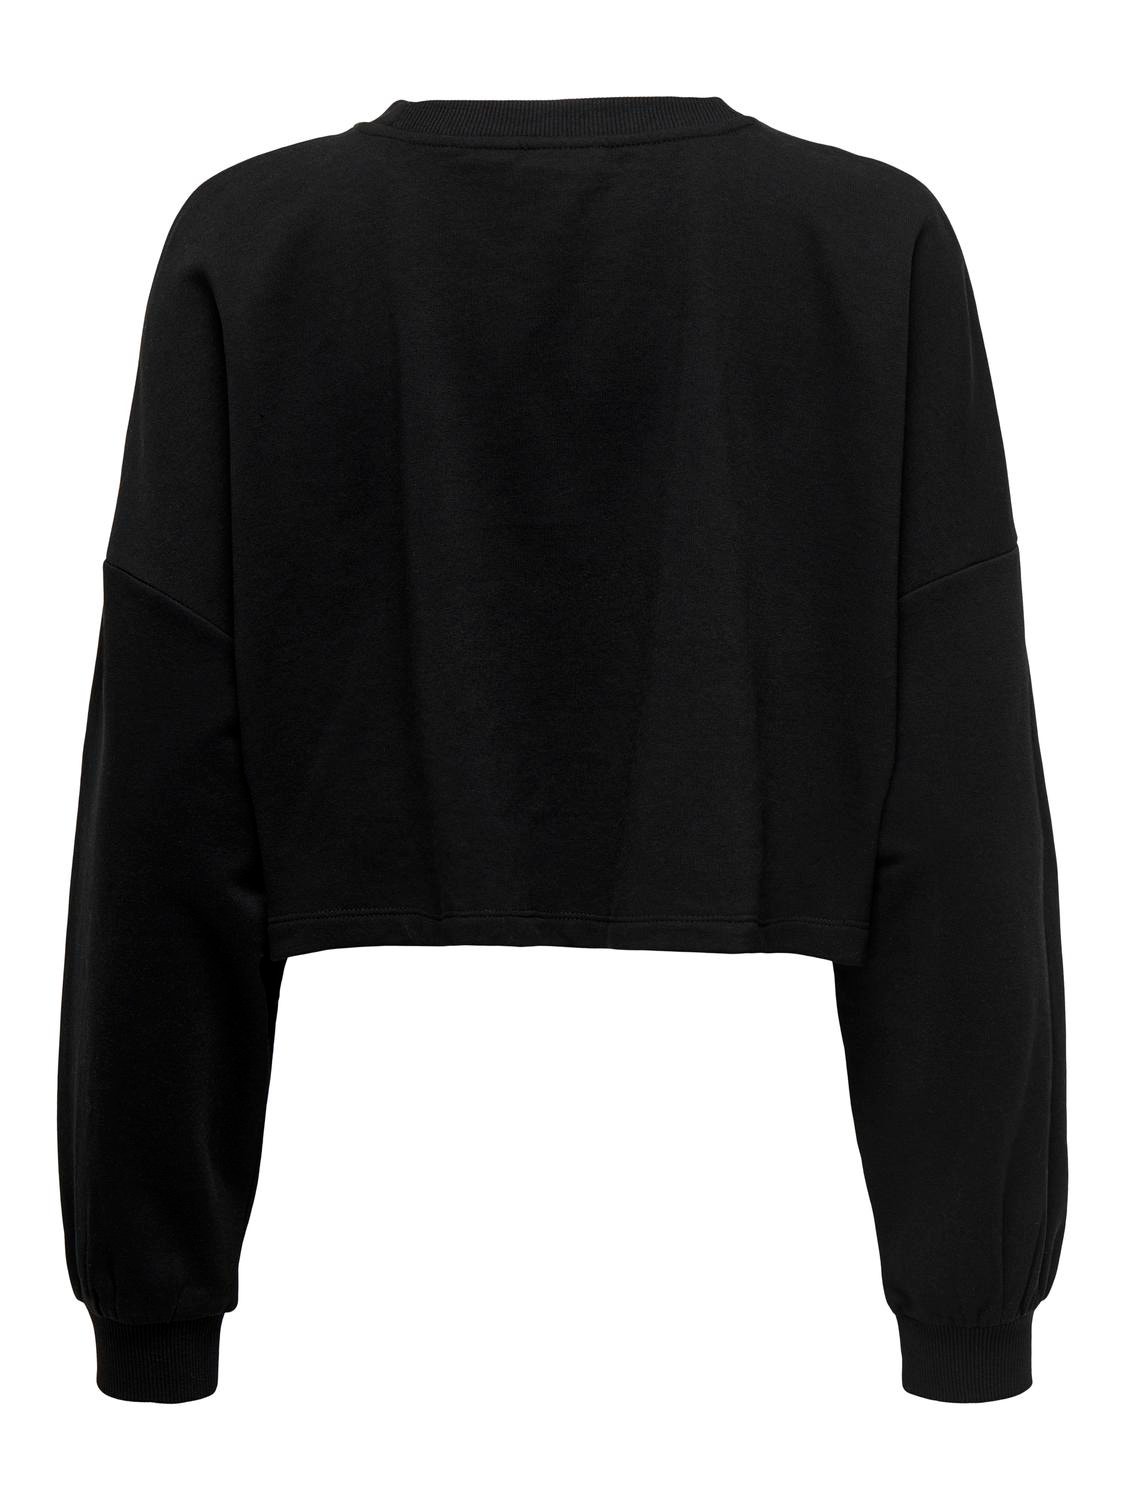 ONLY Normal geschnitten Rundhals Sweatshirt -Black - 15304120